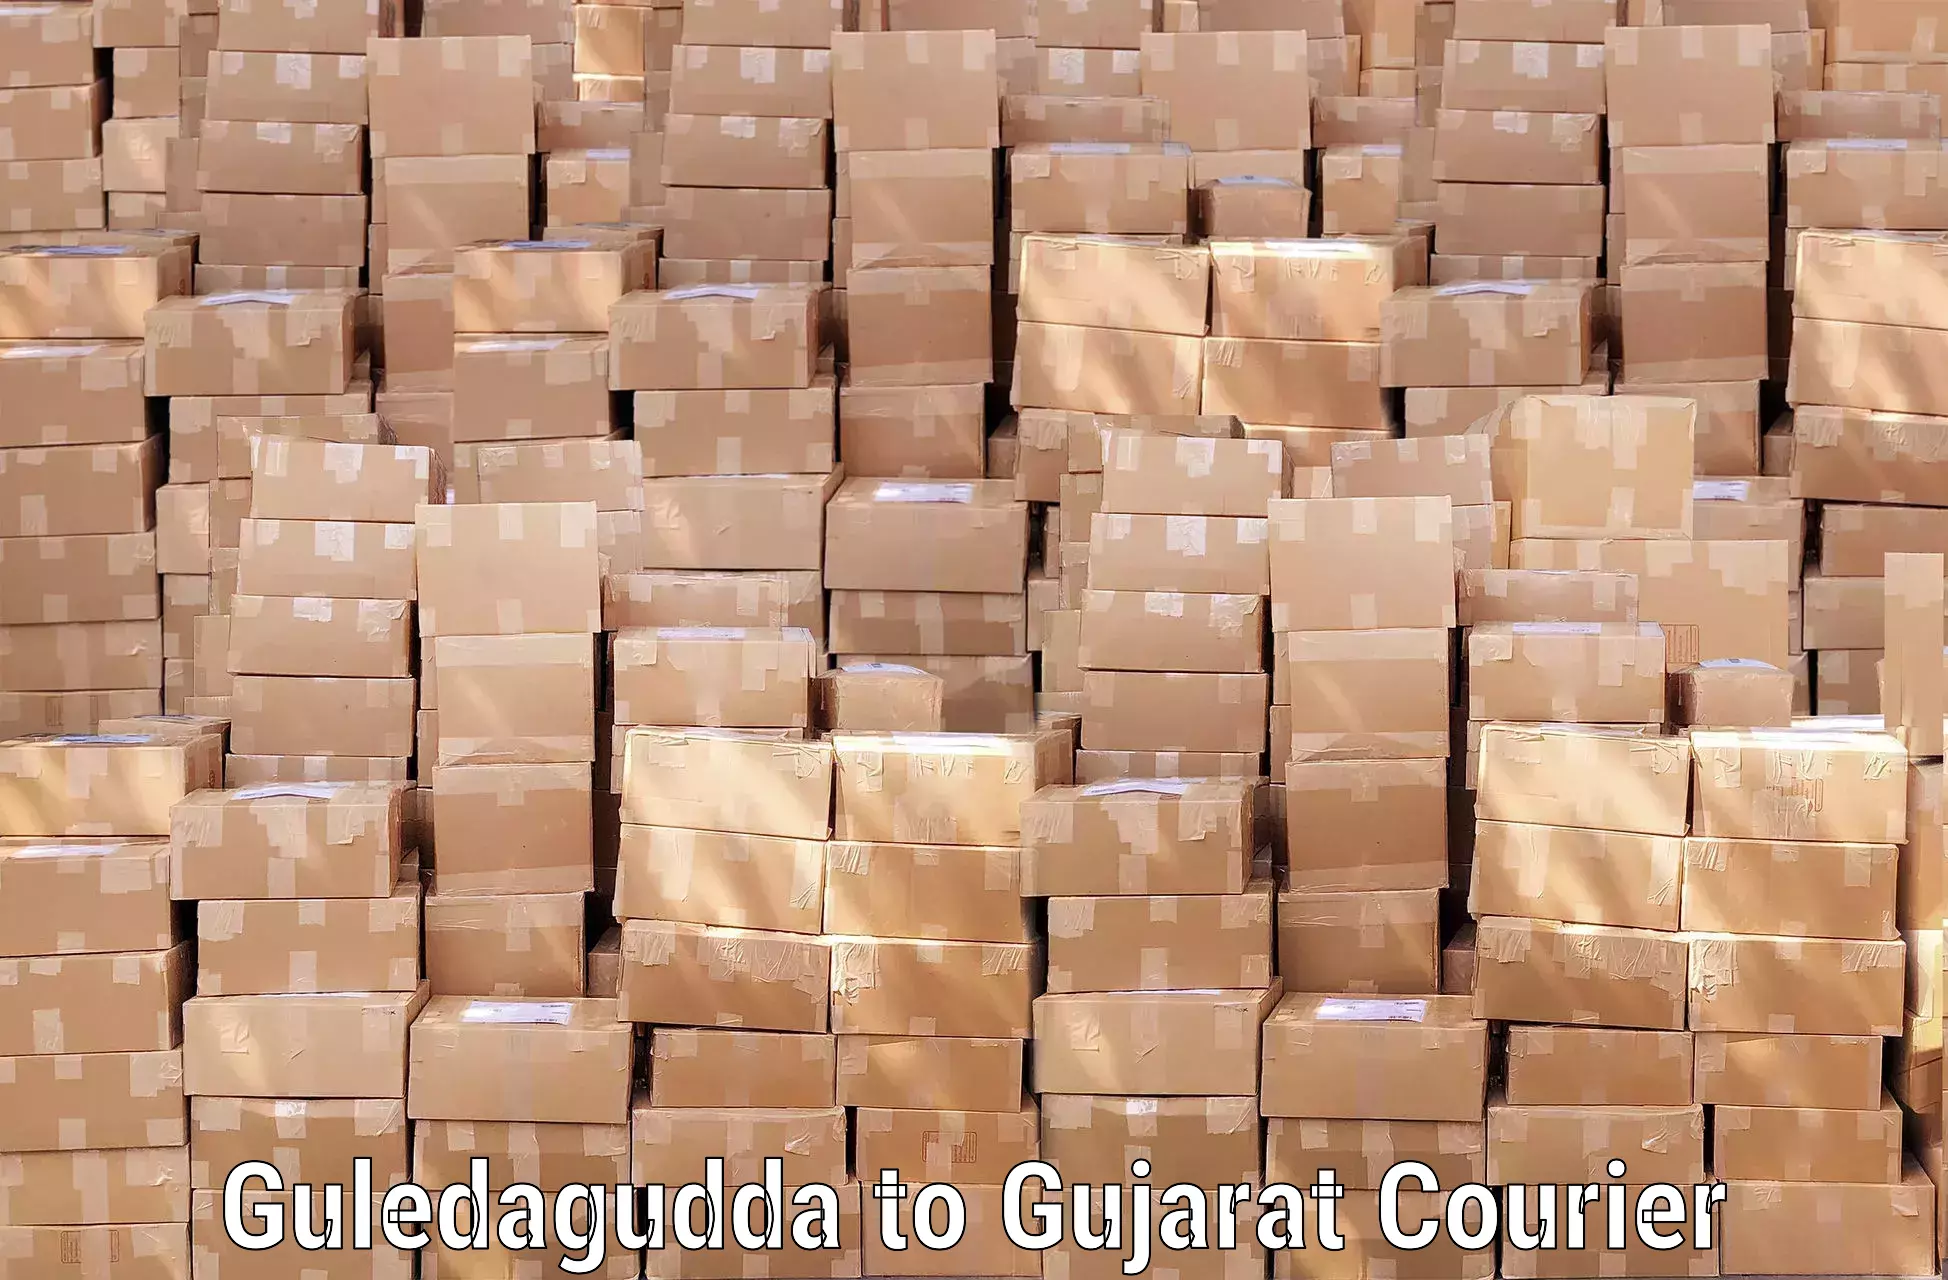 Automated luggage transport Guledagudda to Gujarat